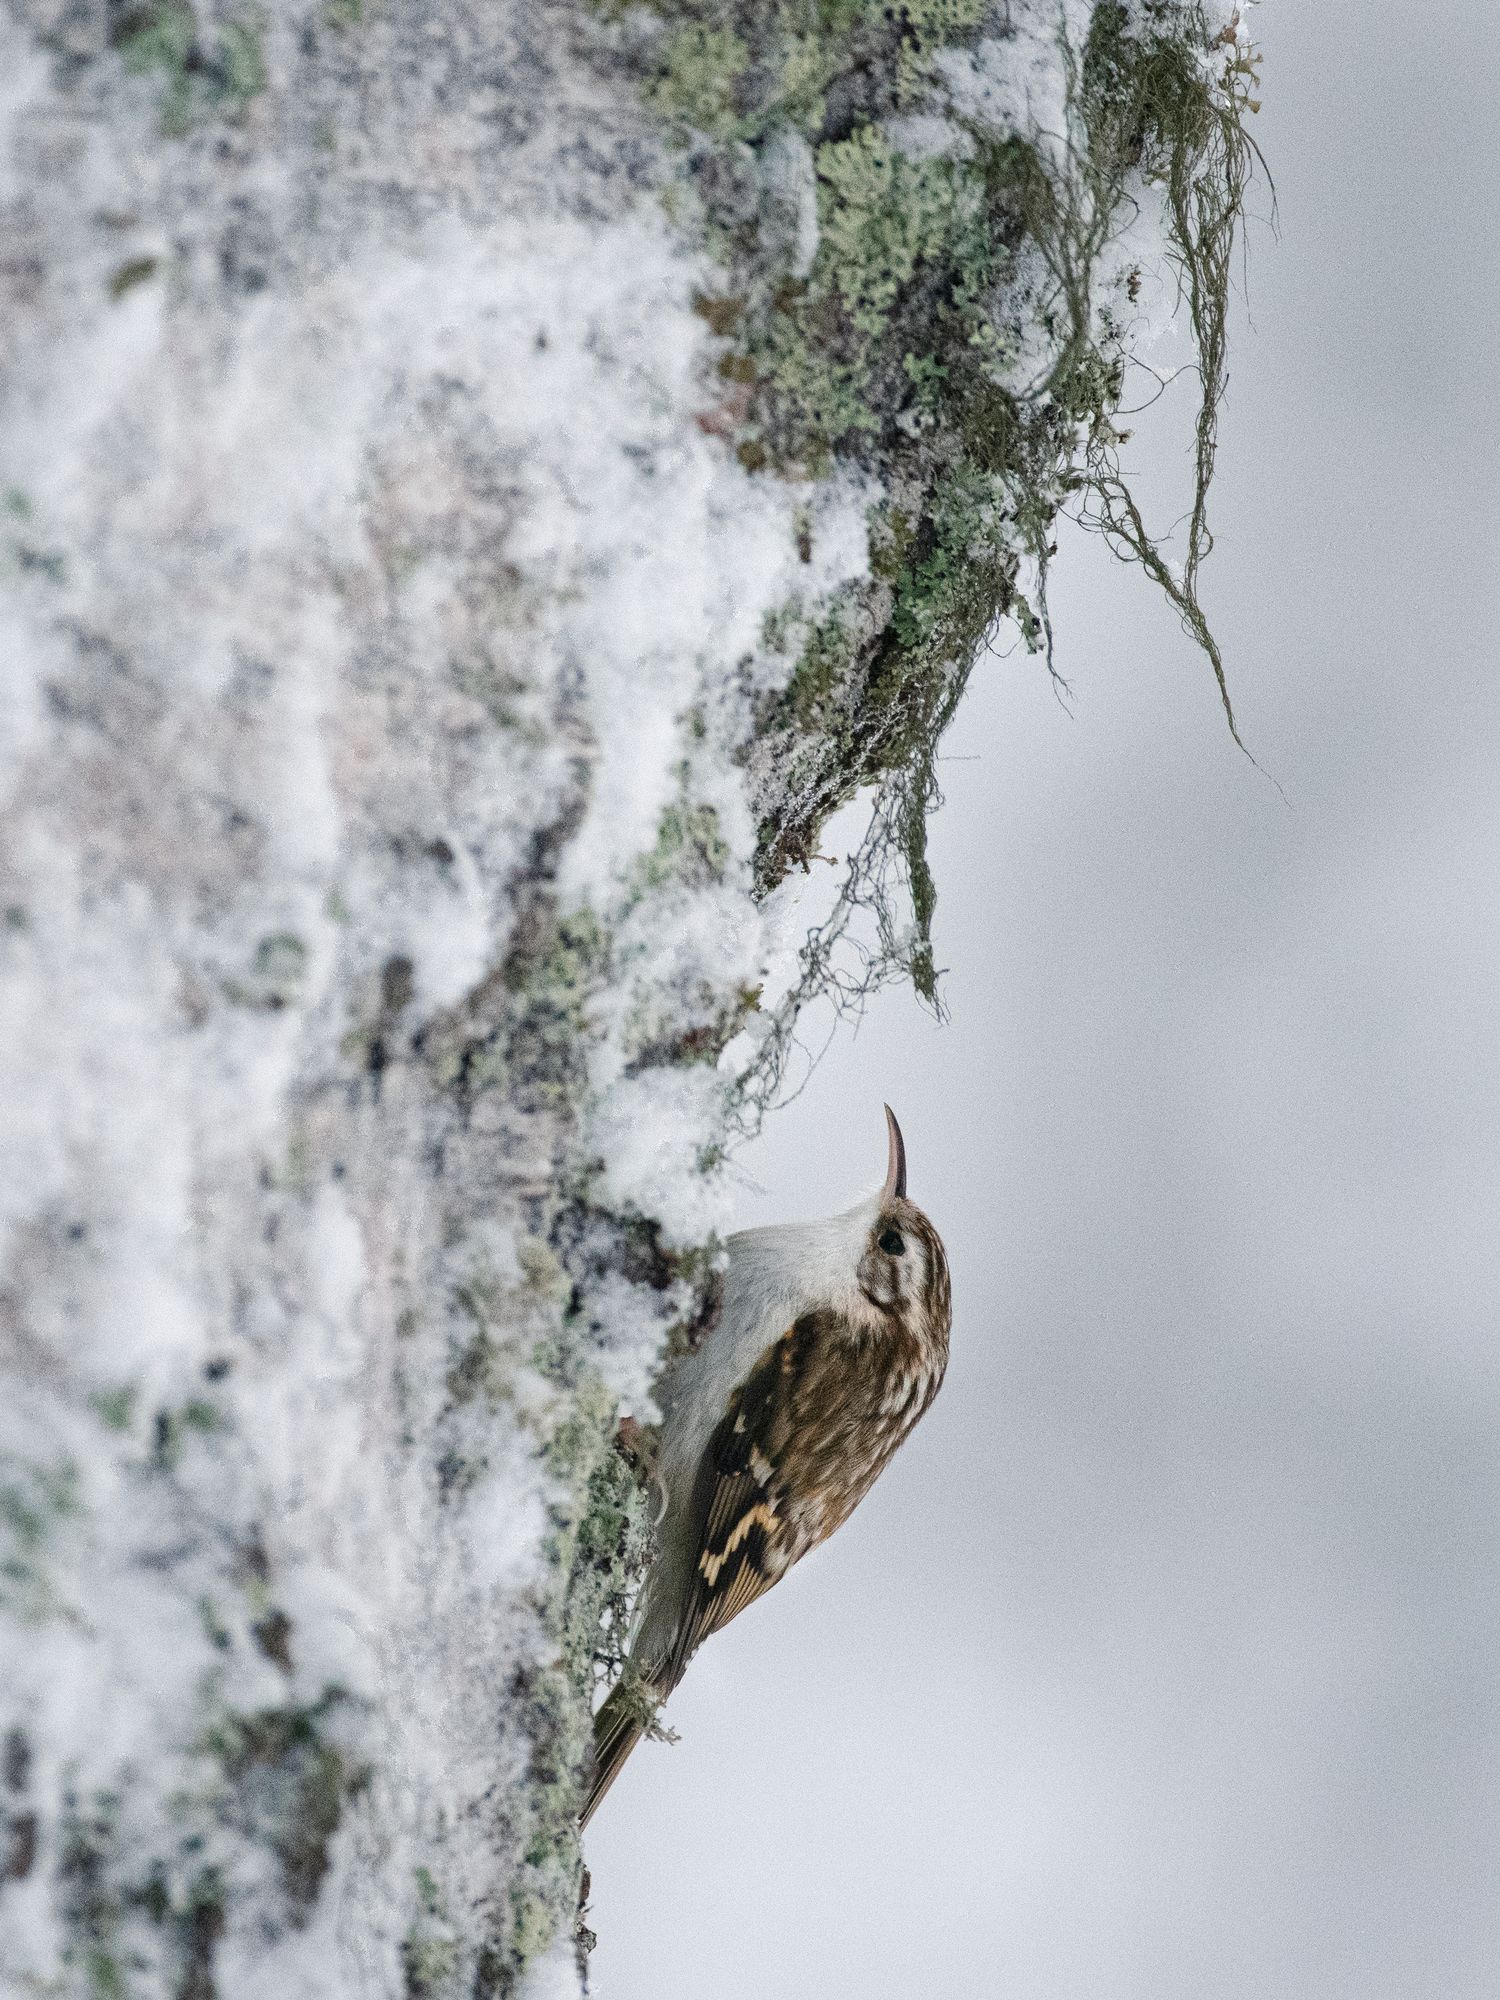 Puukiipijä viihtyy pihan vanhoissa puissa, joiden rosoisen kaarnan rakosista se löytää ravinnokseen talvehtivia hämähäkkejä sekä hyönteisiä, niiden koteloita ja munia. Kuva: Heikki Willamo